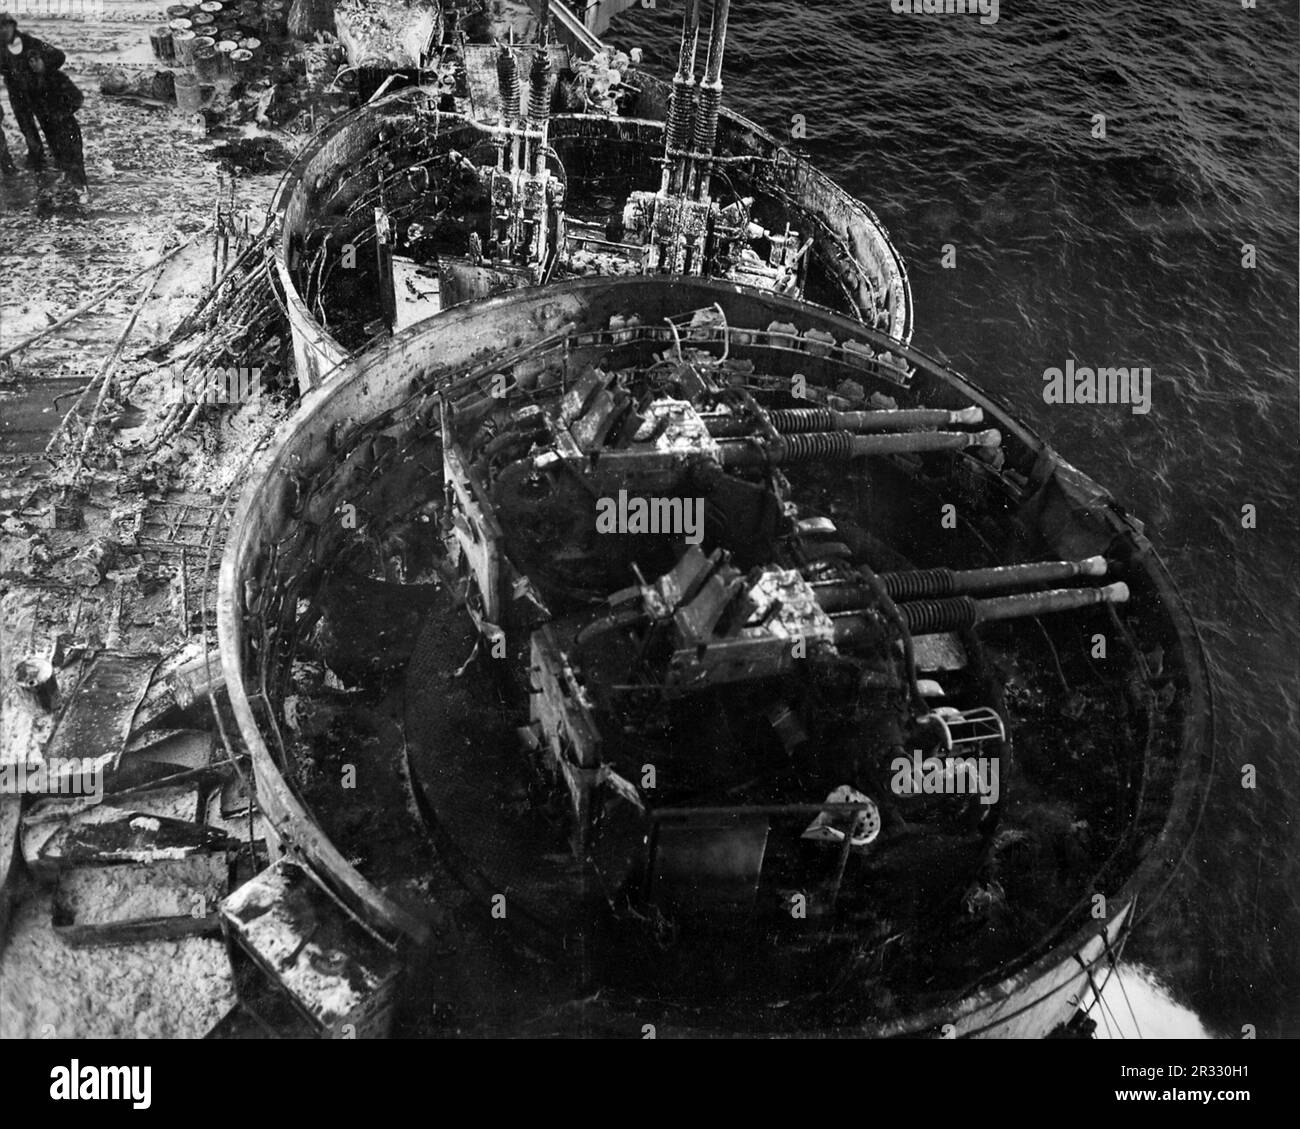 Vista de la escama quemada de Bofors de 40 mm frente a la isla a bordo de los EE.UU Portaaviones de la Armada USS Enterprise (CV-6), en 1945. La foto fue tomada después del ataque kamikaze el 14 de mayo de 1945. Cuando Japón se enfrentaba a la derrota a finales de 1944, decidió destruir barcos estadounidenses con bombas suicidas, conocidas como Kamikaze. Estos ataques eran un arma física y psicológica potente y hundieron un total de 47 barcos a un costo de más de 3000 pilotos y aviones. A finales de 1944 la Marina de los Estados Unidos era lo suficientemente grande como para que las pérdidas fueran insignificantes y no alteraran el curso de la guerra. Foto de stock